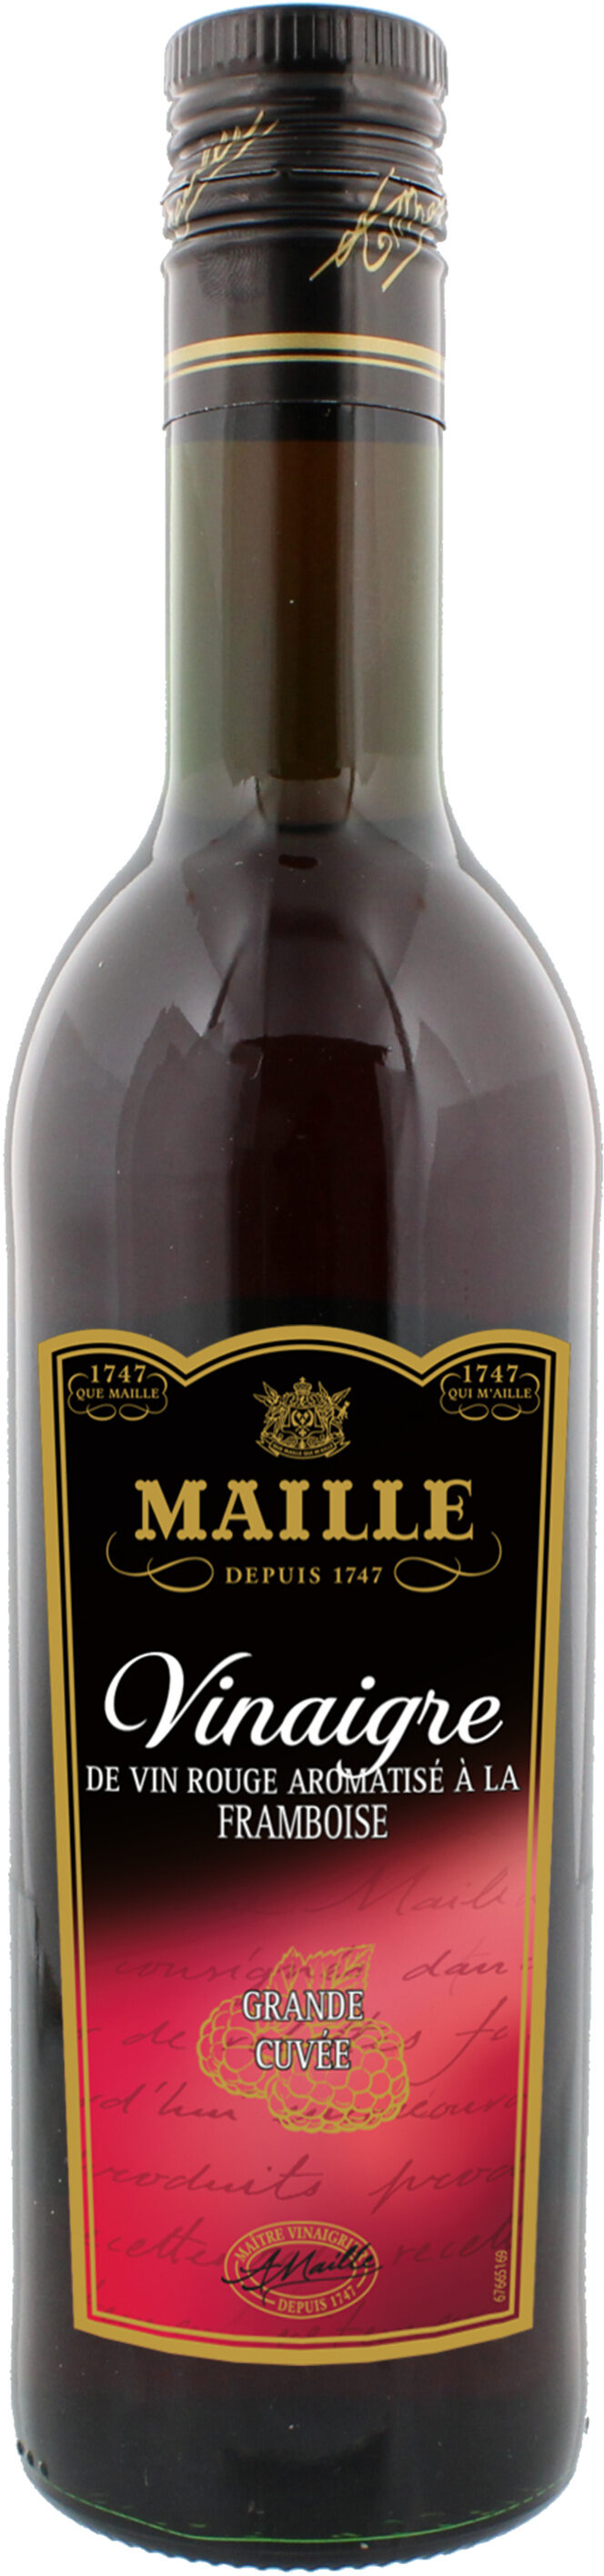 MAILLE Vinaigre de Vin Rouge aromatisé à la Framboise 50 cl - Produit - fr